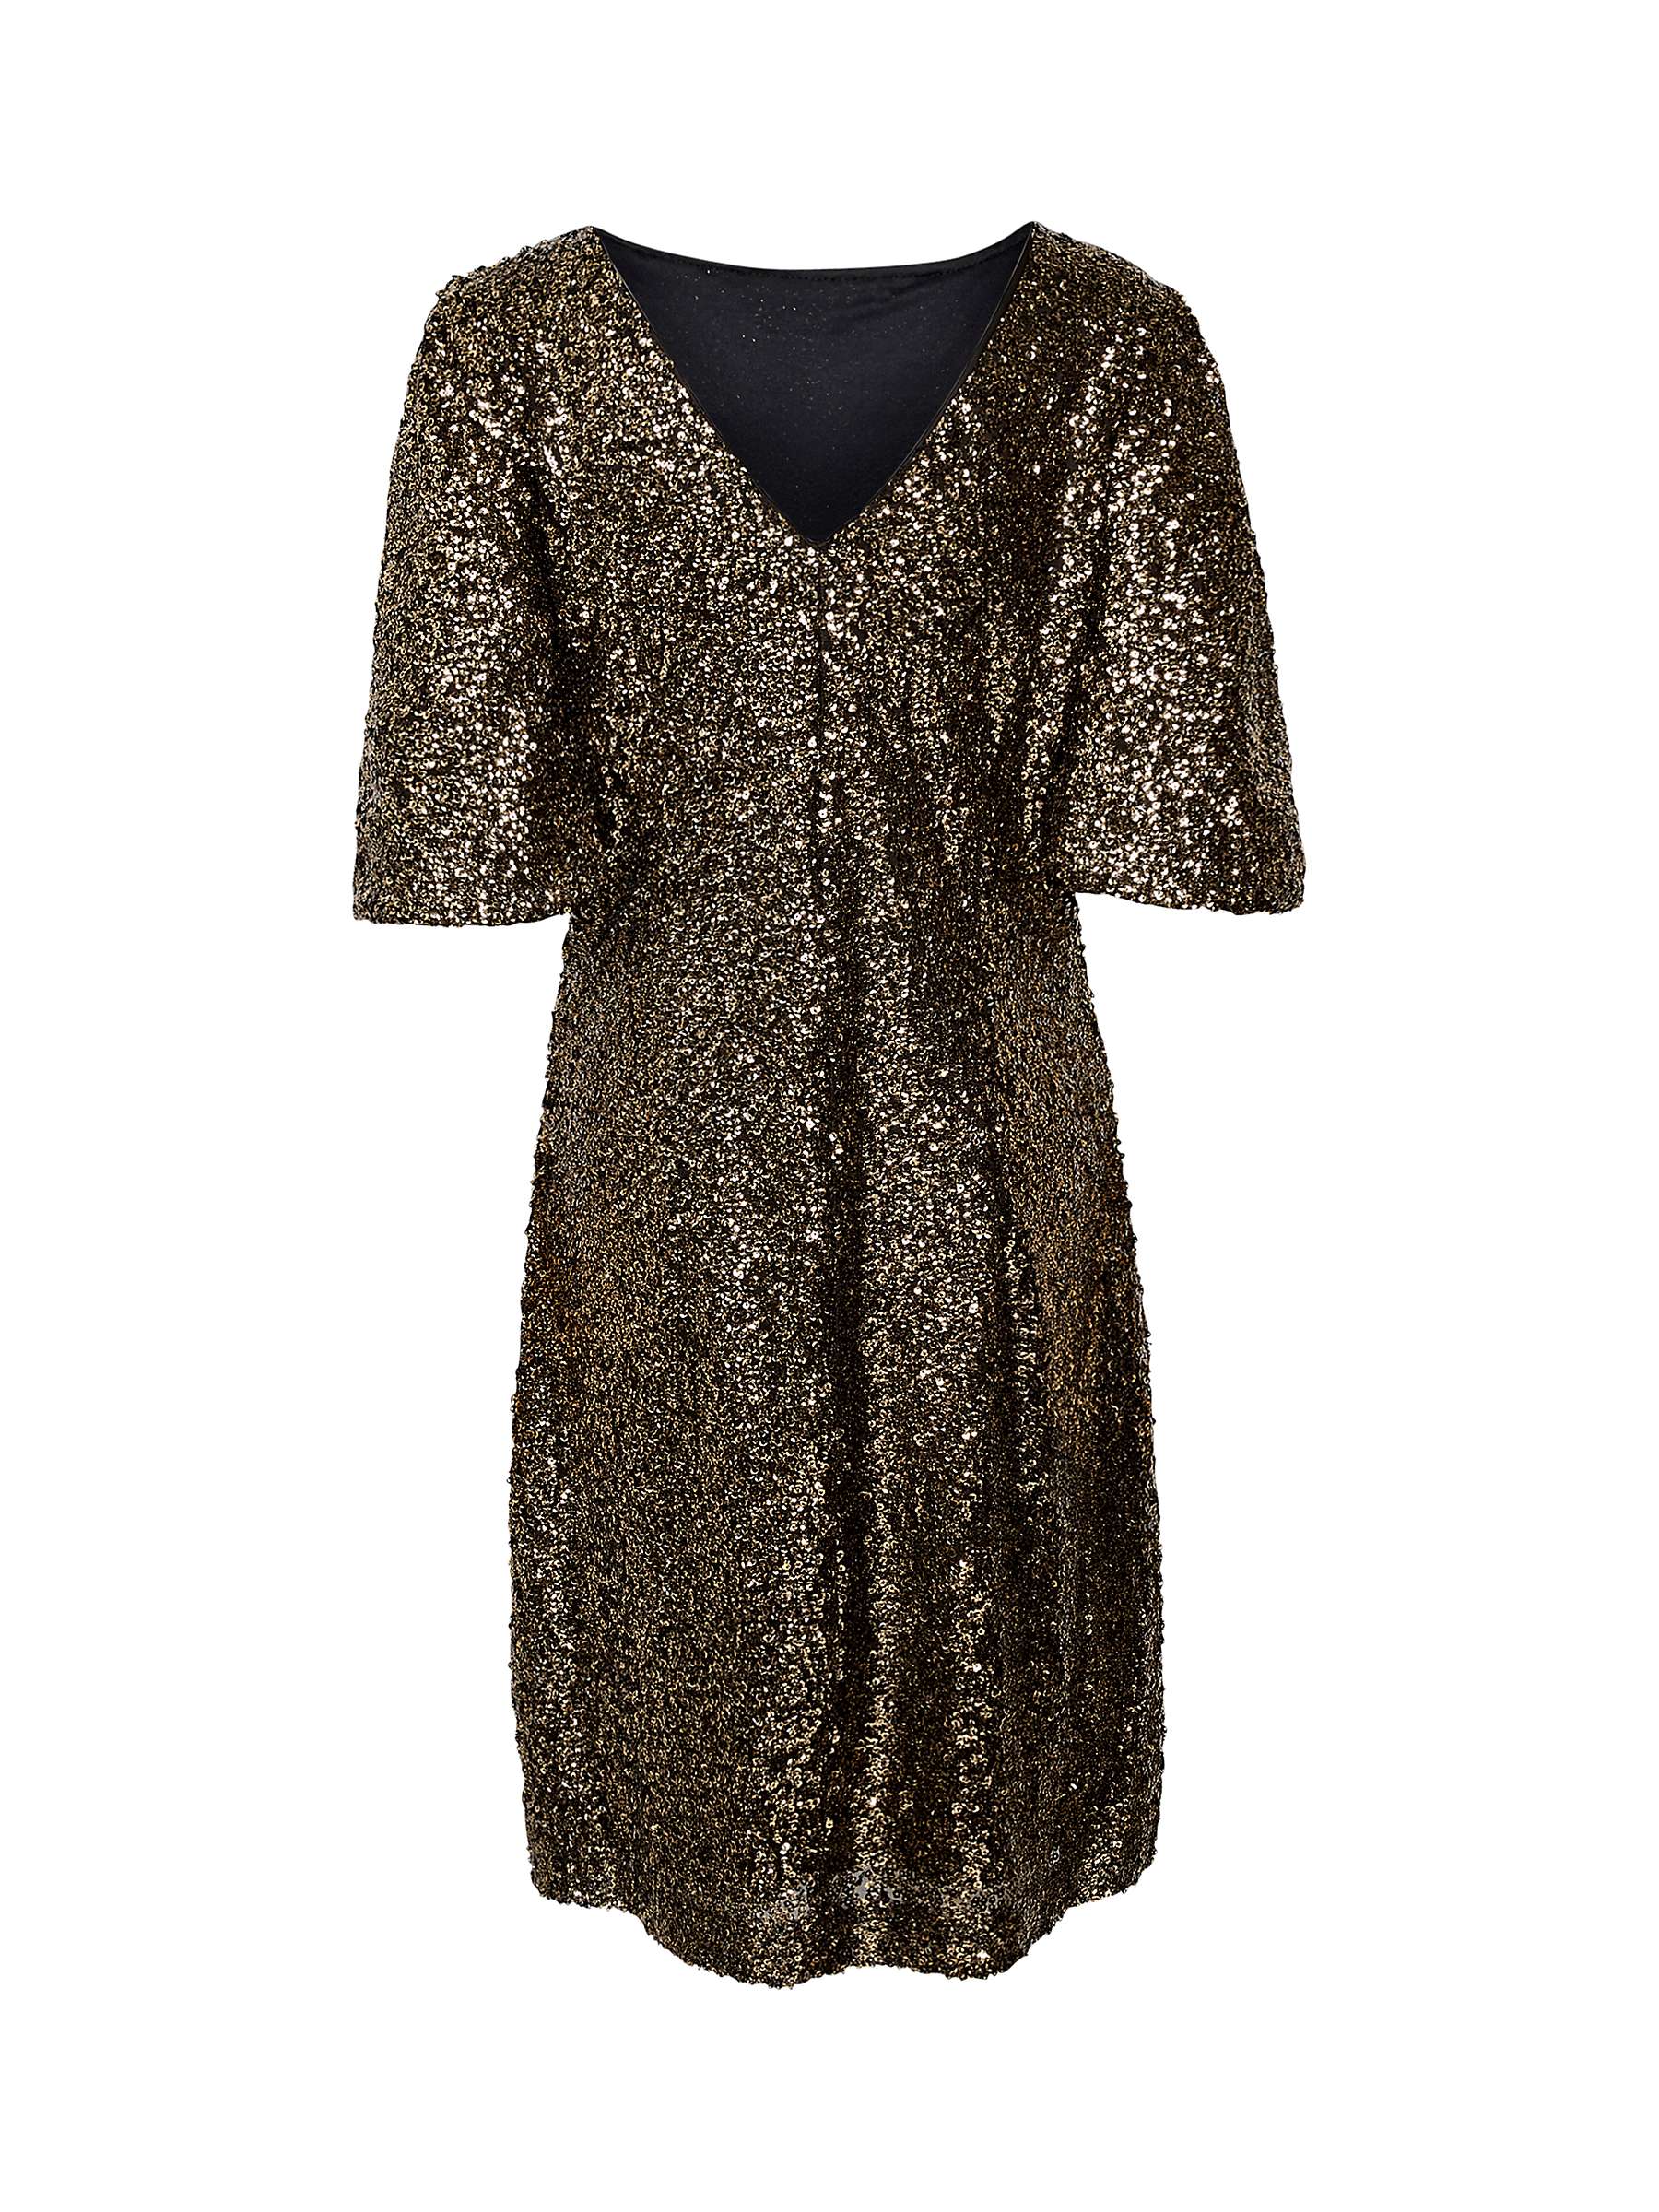 Buy Saint Tropez Bailey Sequin Dress, Metallic Online at johnlewis.com